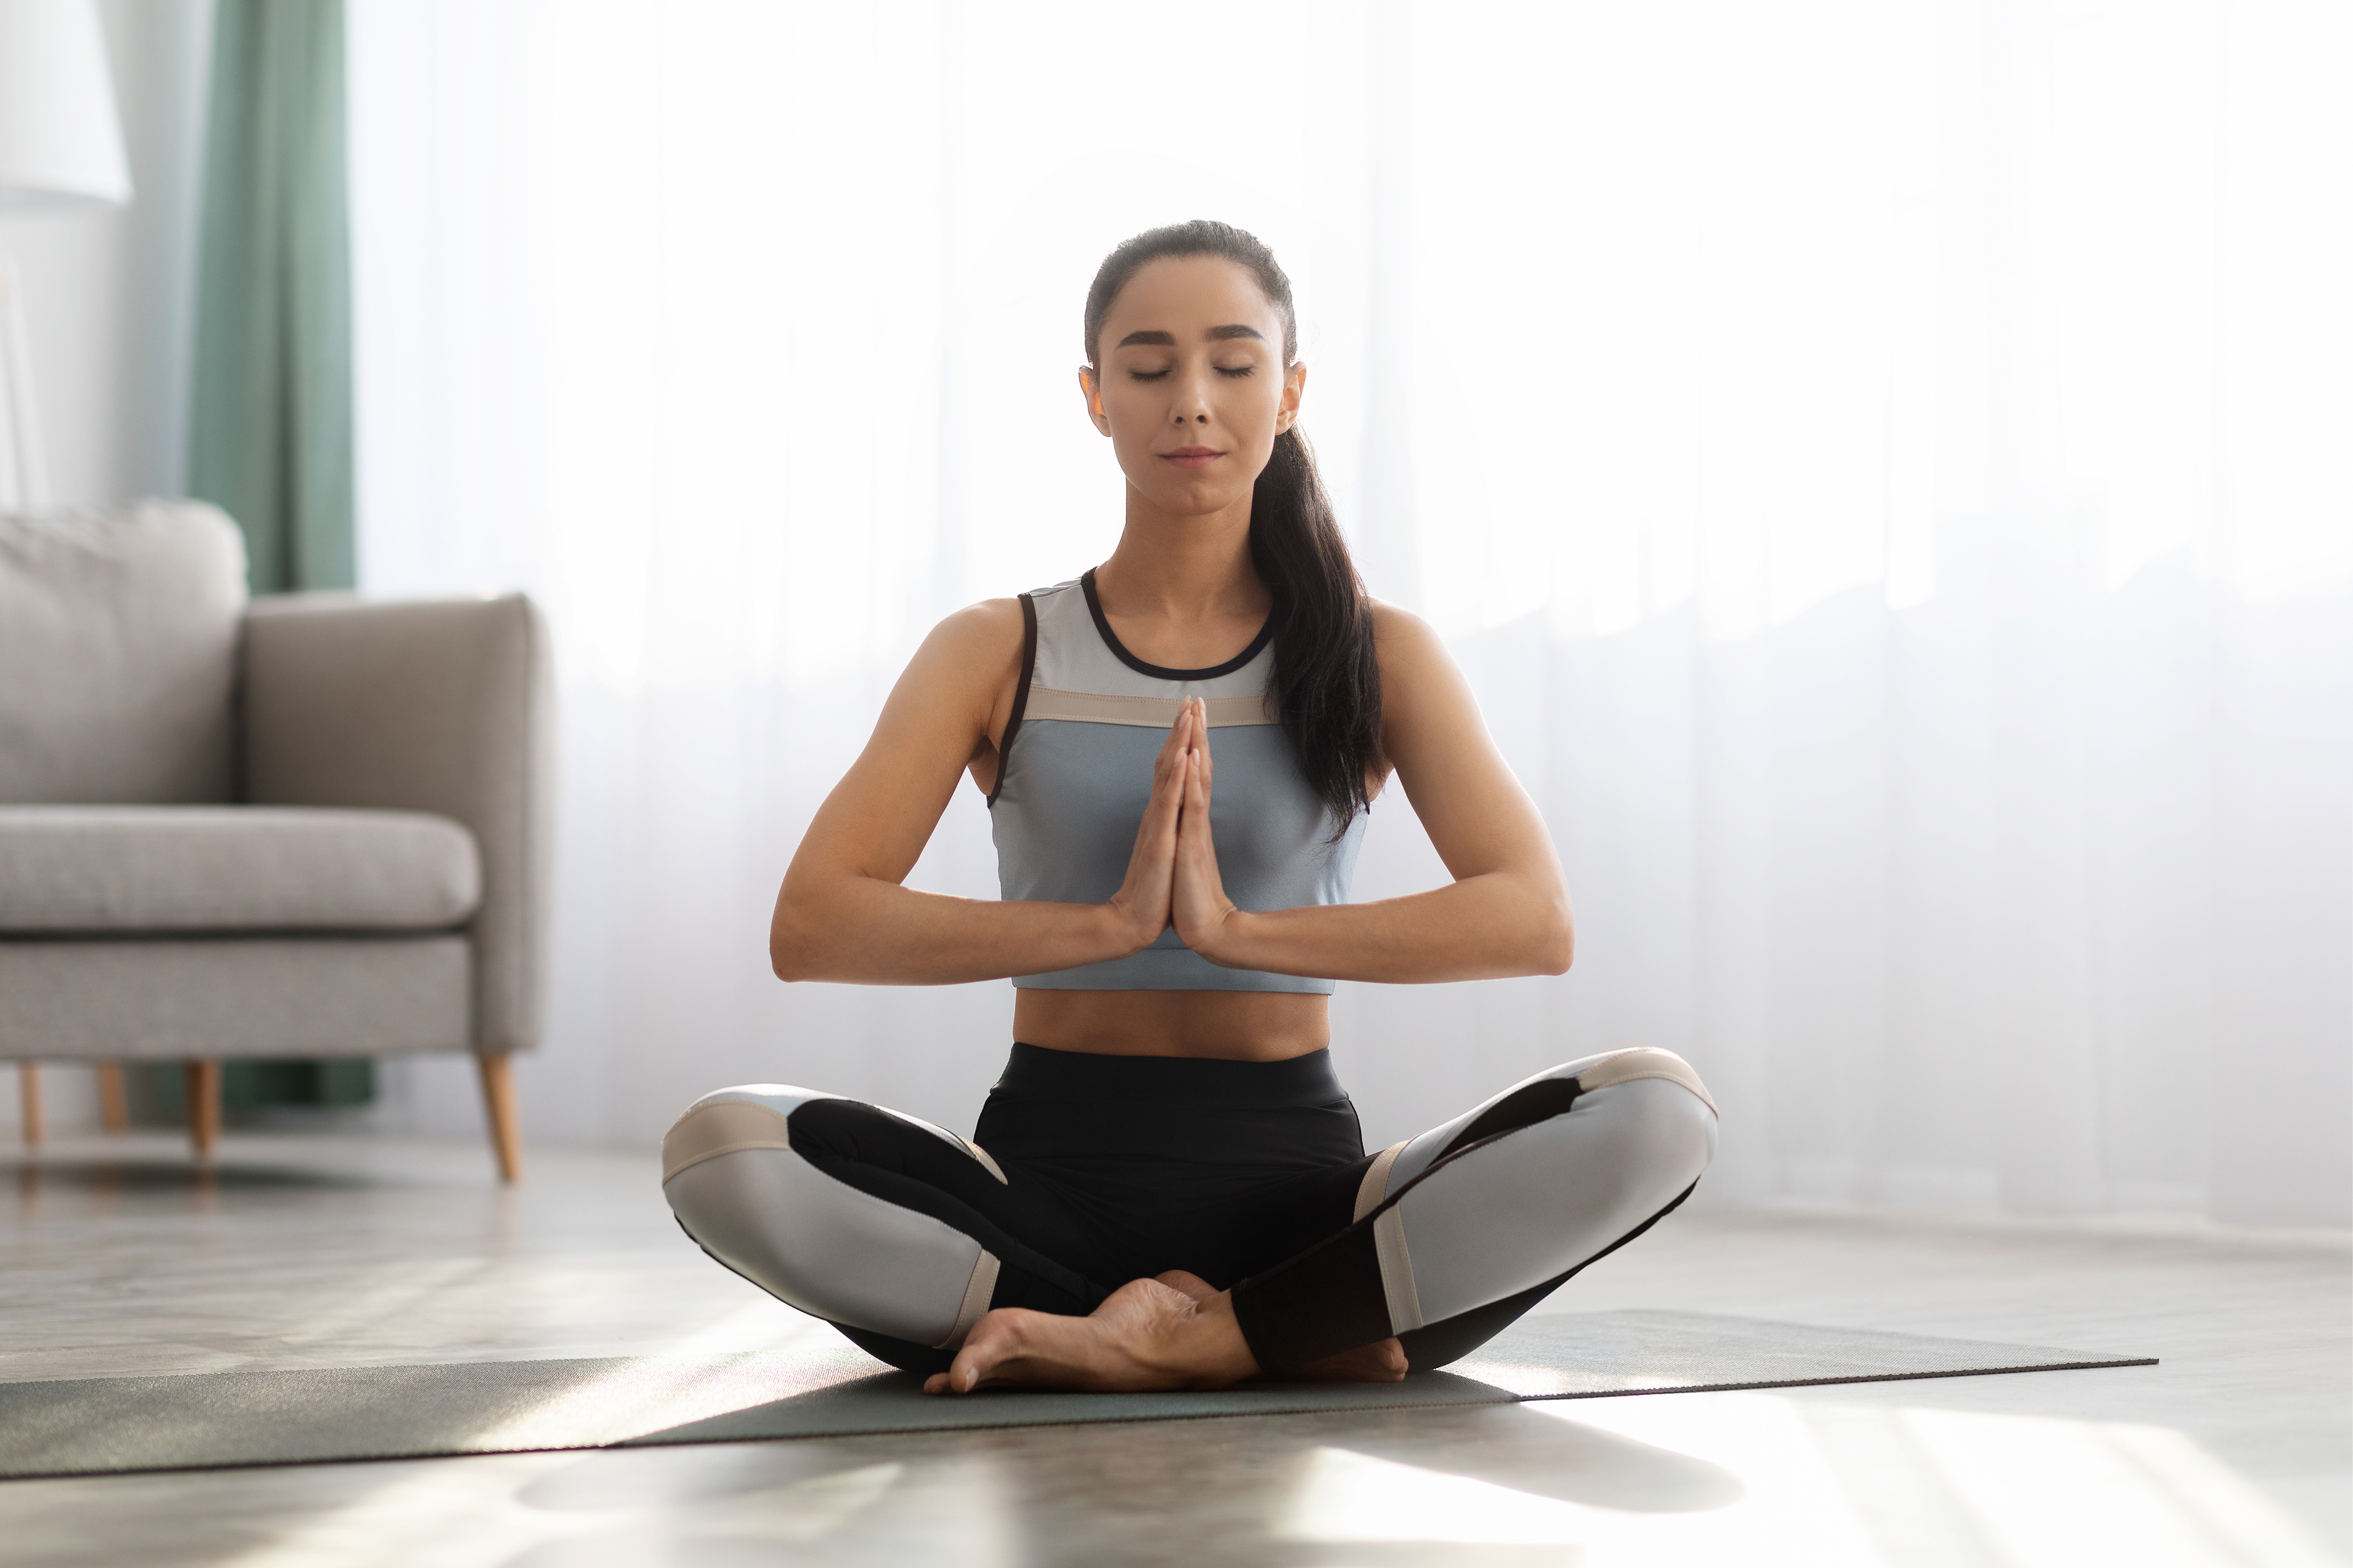 Una esterilla o una colchoneta es lo nico que necesitas para practicar yoga en casa.